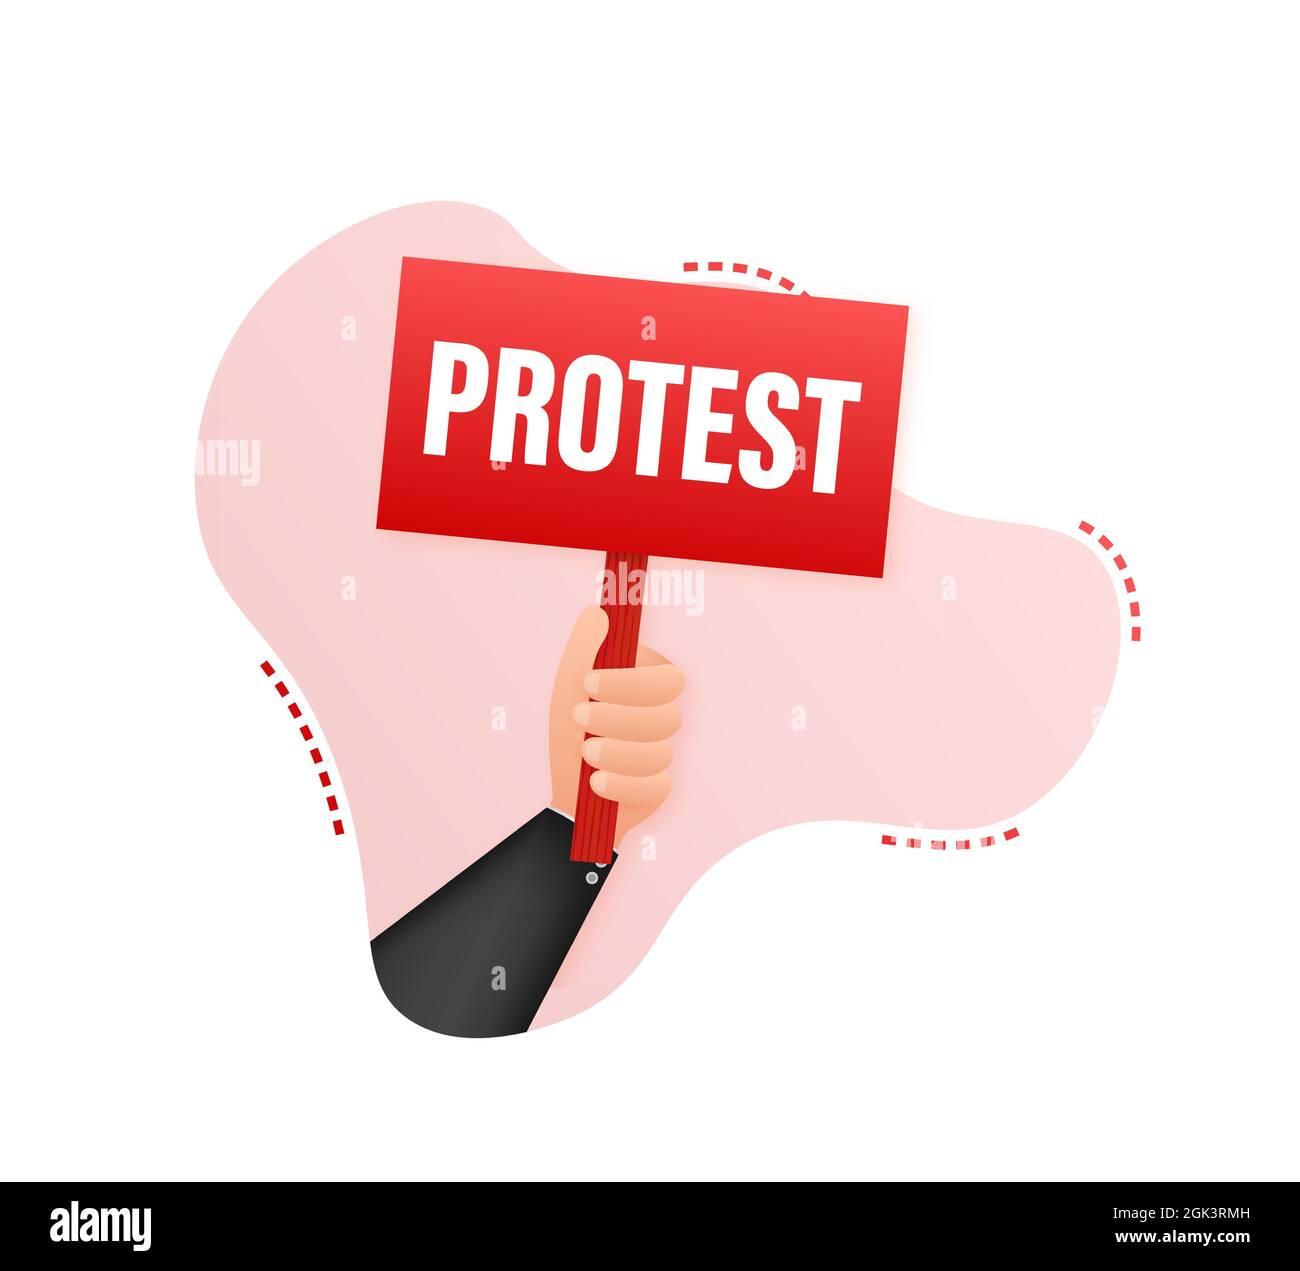 Les manifestants tiennent des signes de protestation. Illustration du stock vectoriel. Illustration de Vecteur